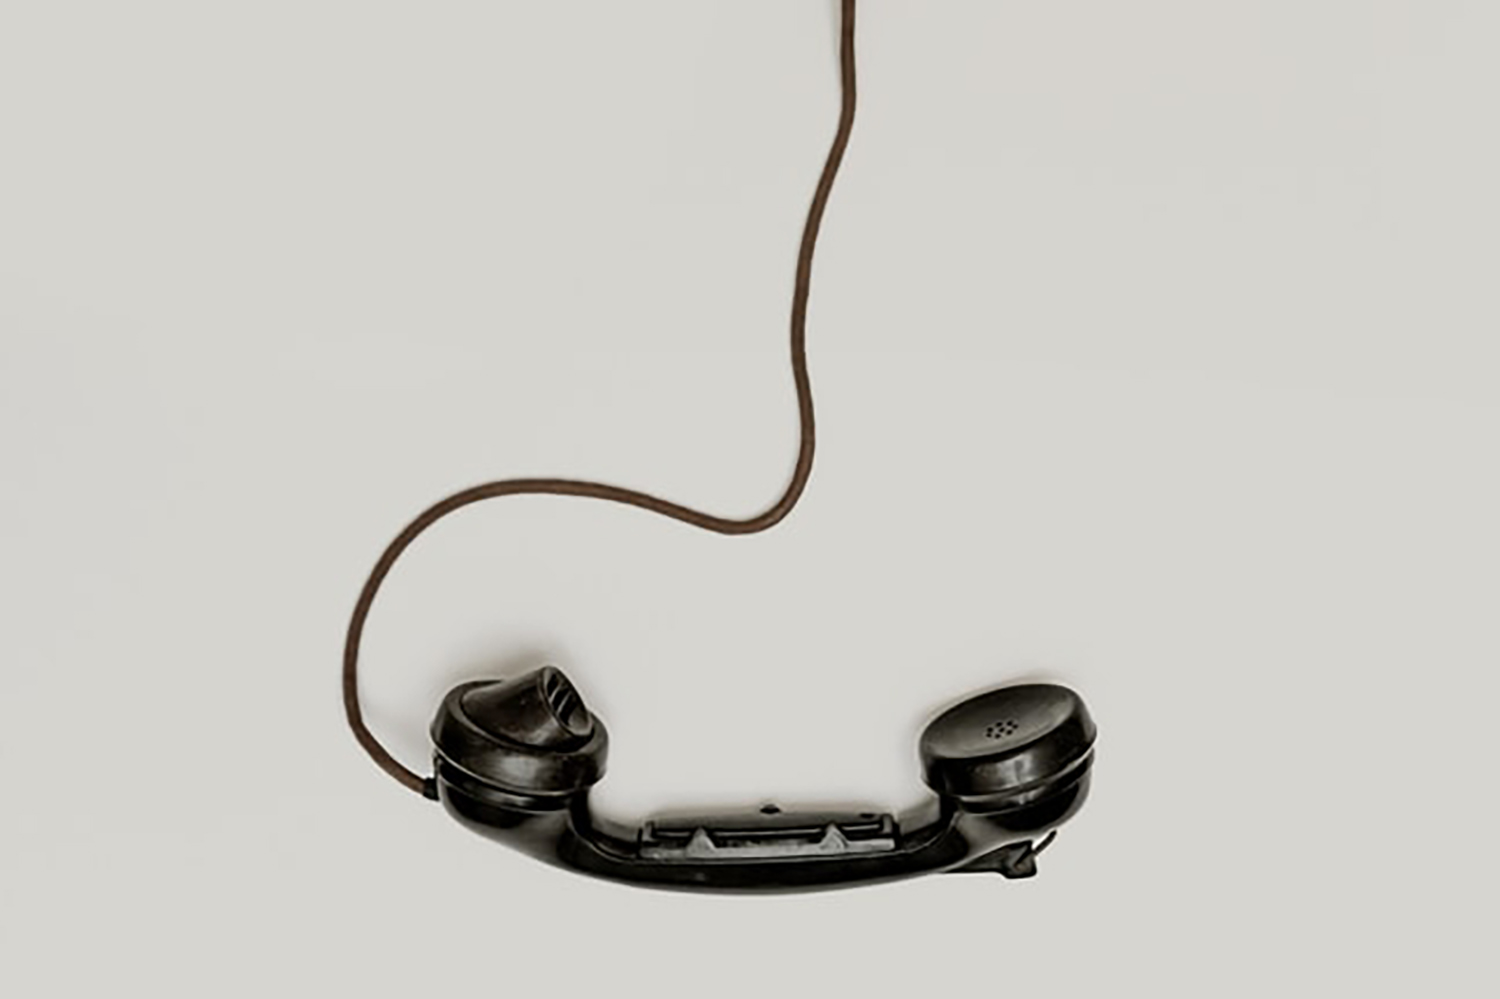 Telefonlur hänger i en sladd.